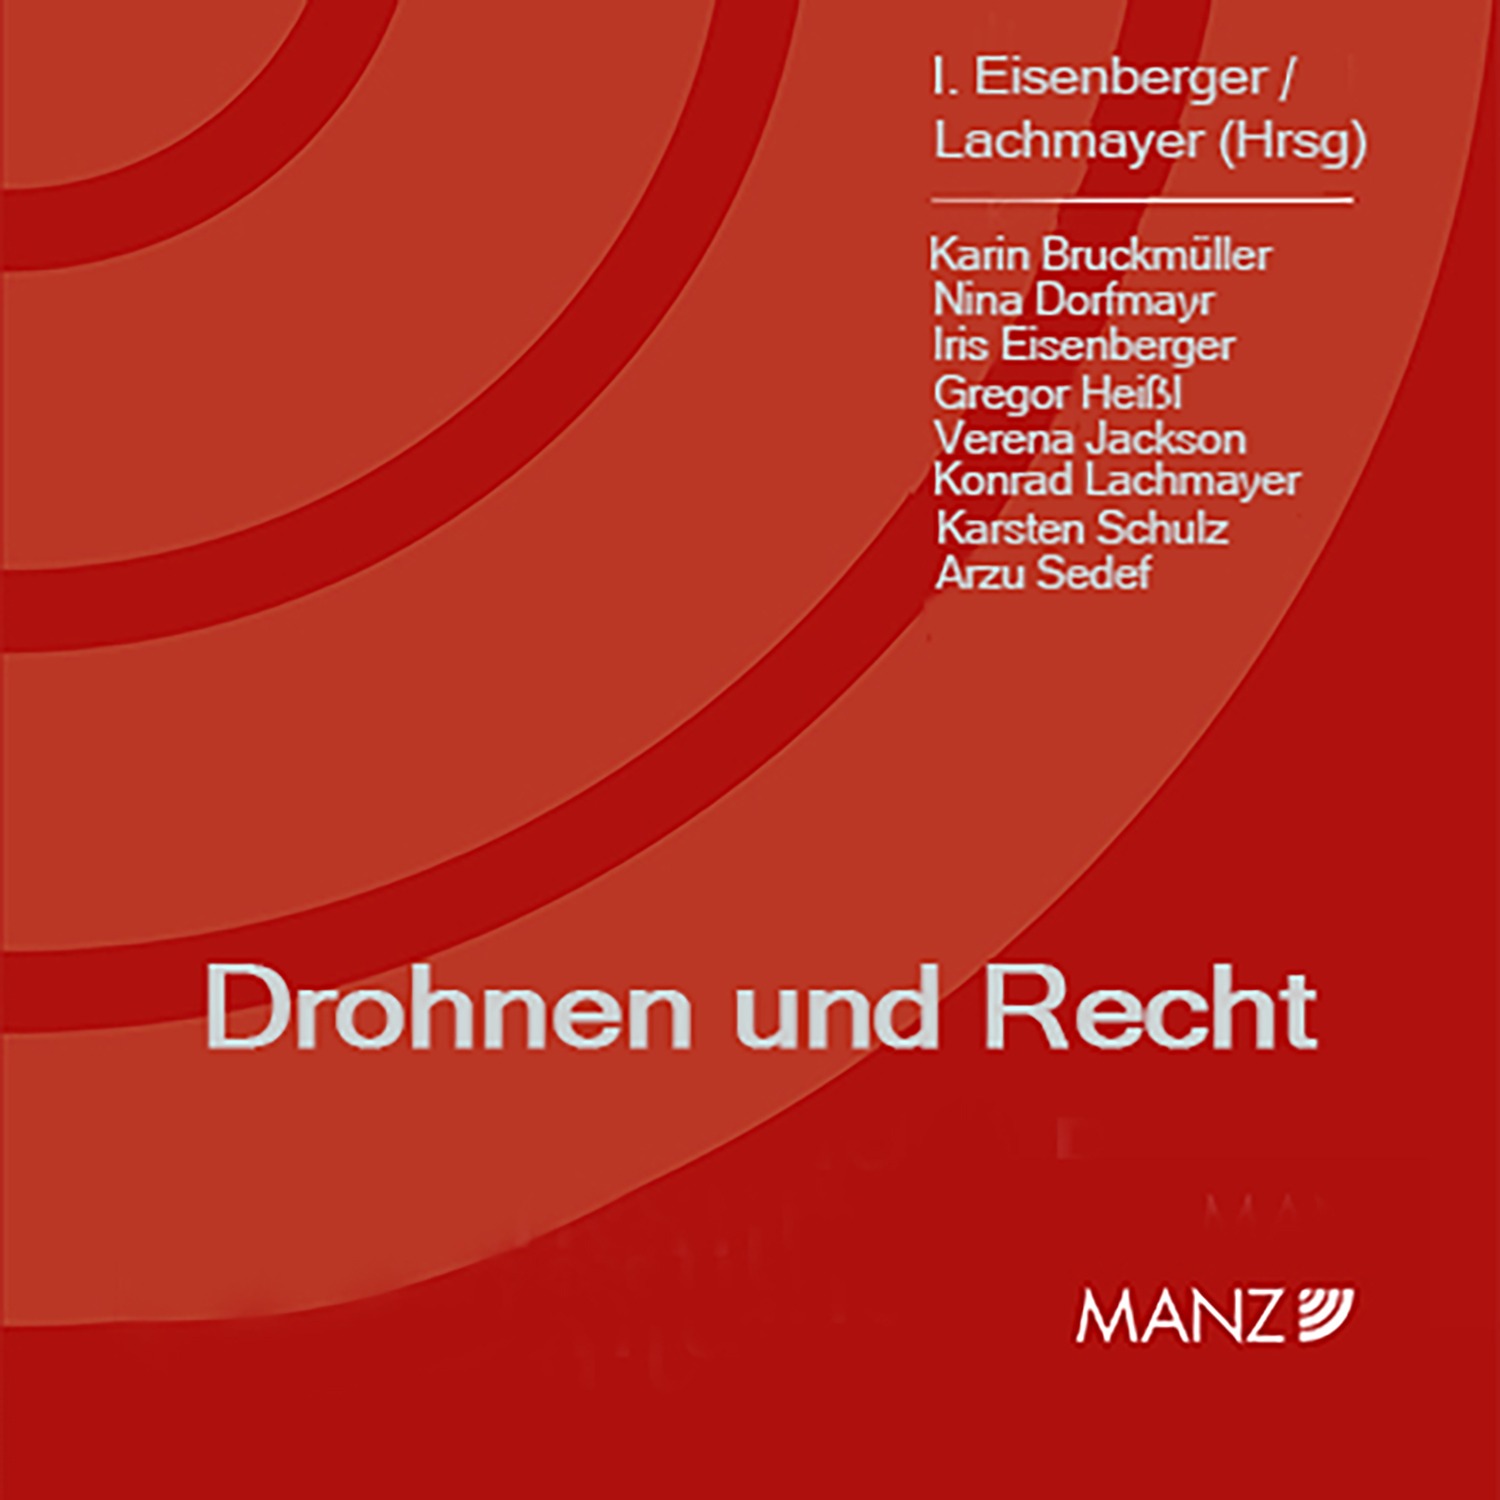 Just published – Drohnen und Recht